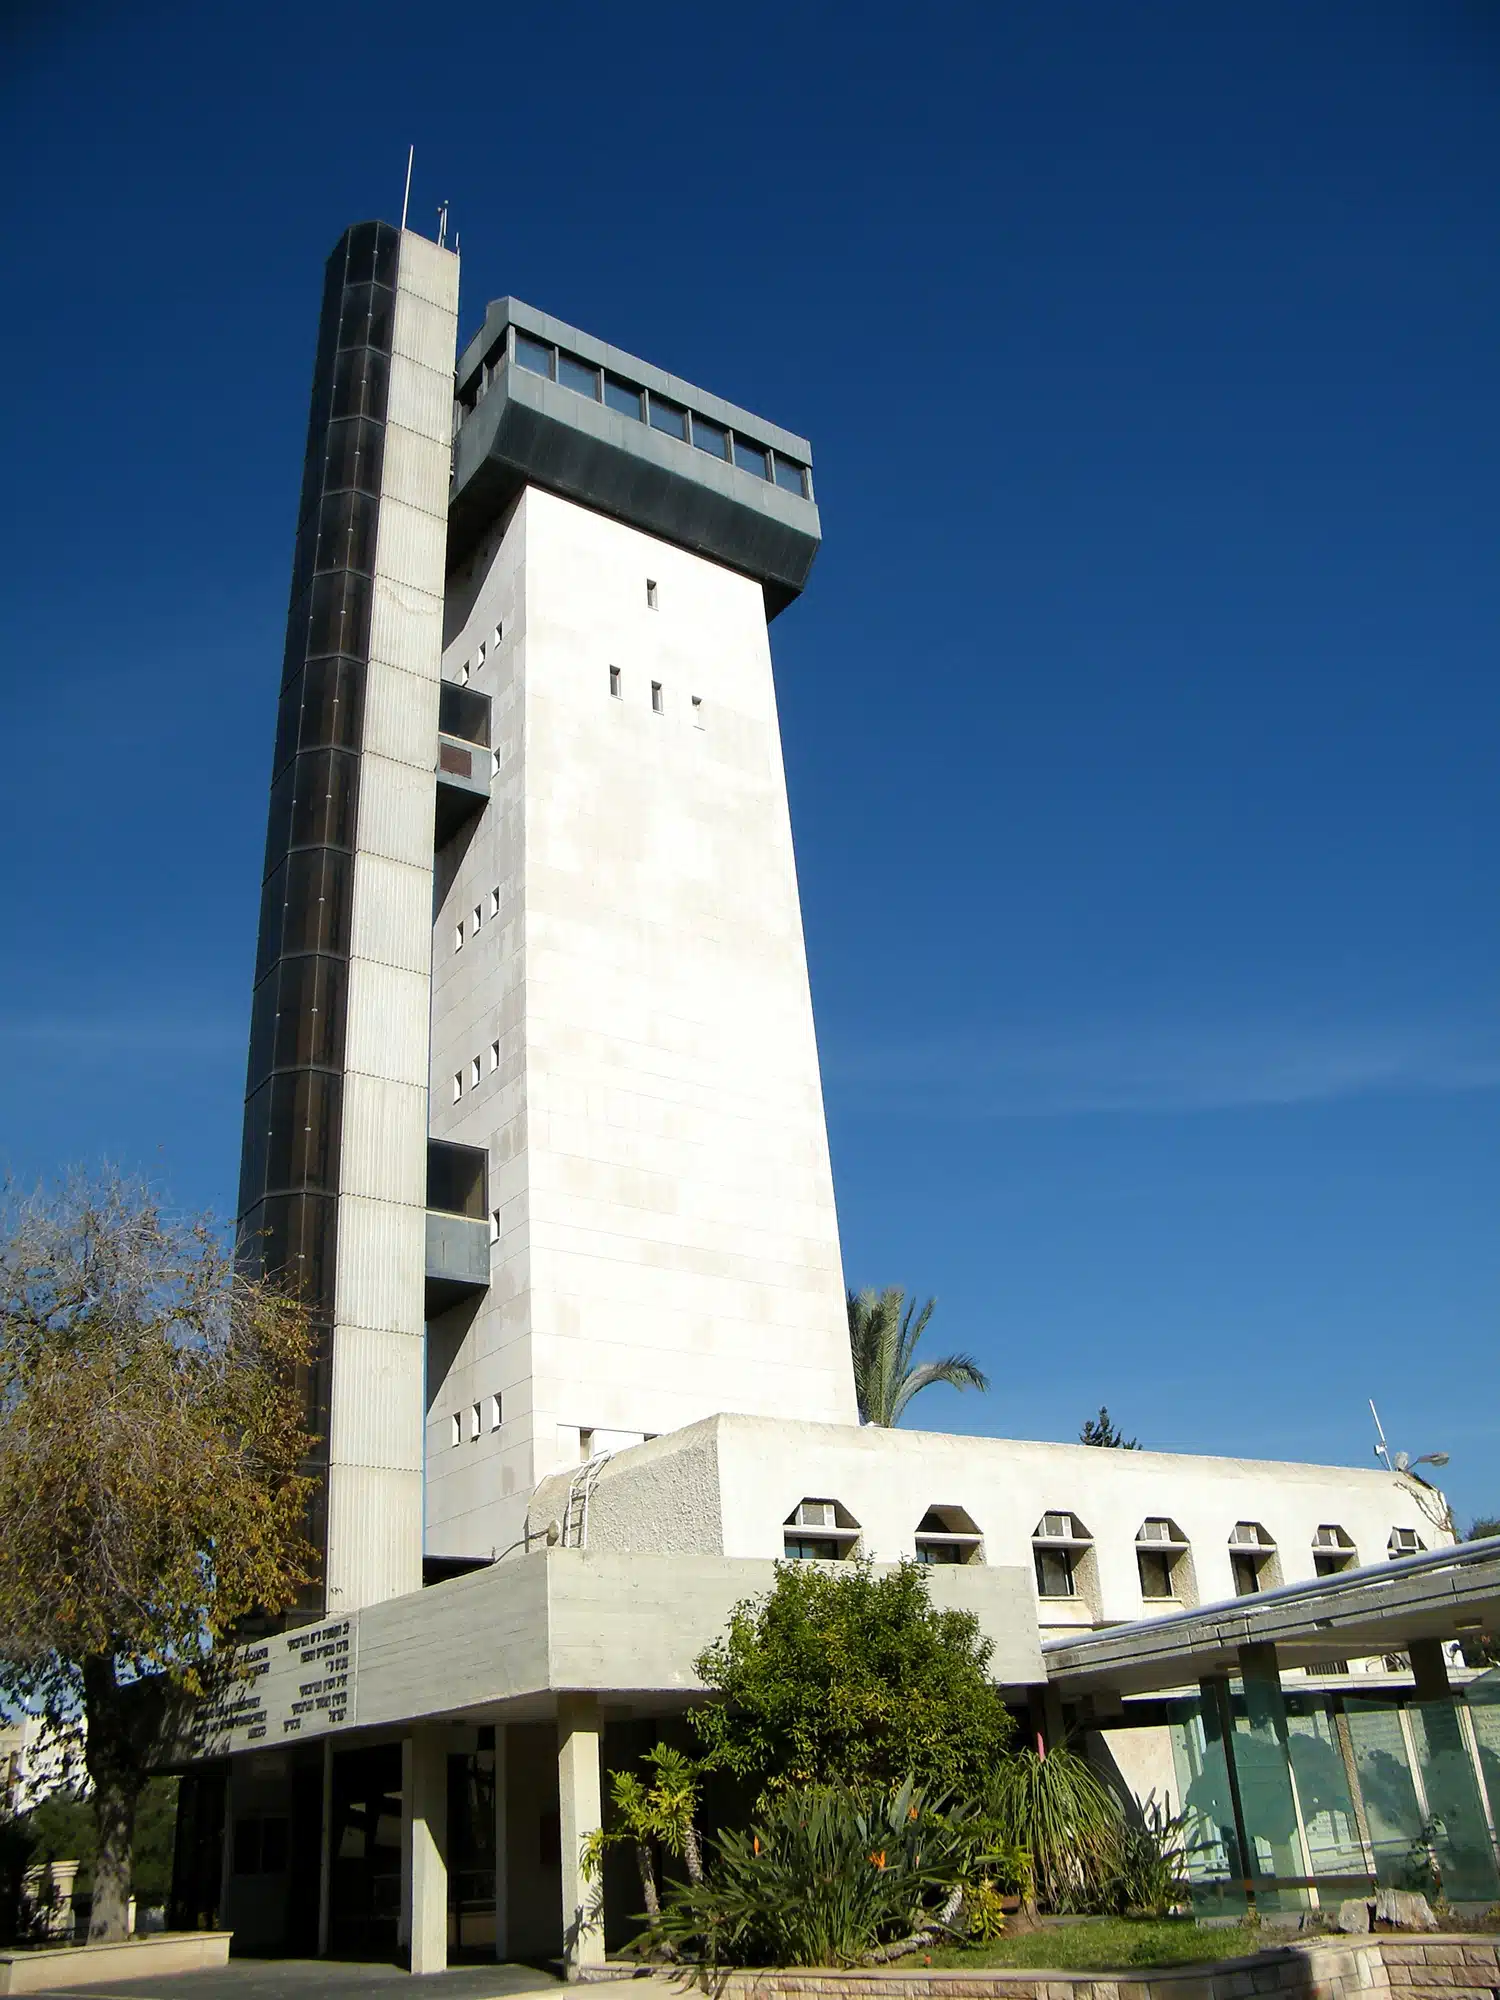 מבנה המצפה באוניברסיטת בר אילן. <a href="https://depositphotos.com. ">המחשה: depositphotos.com</a>